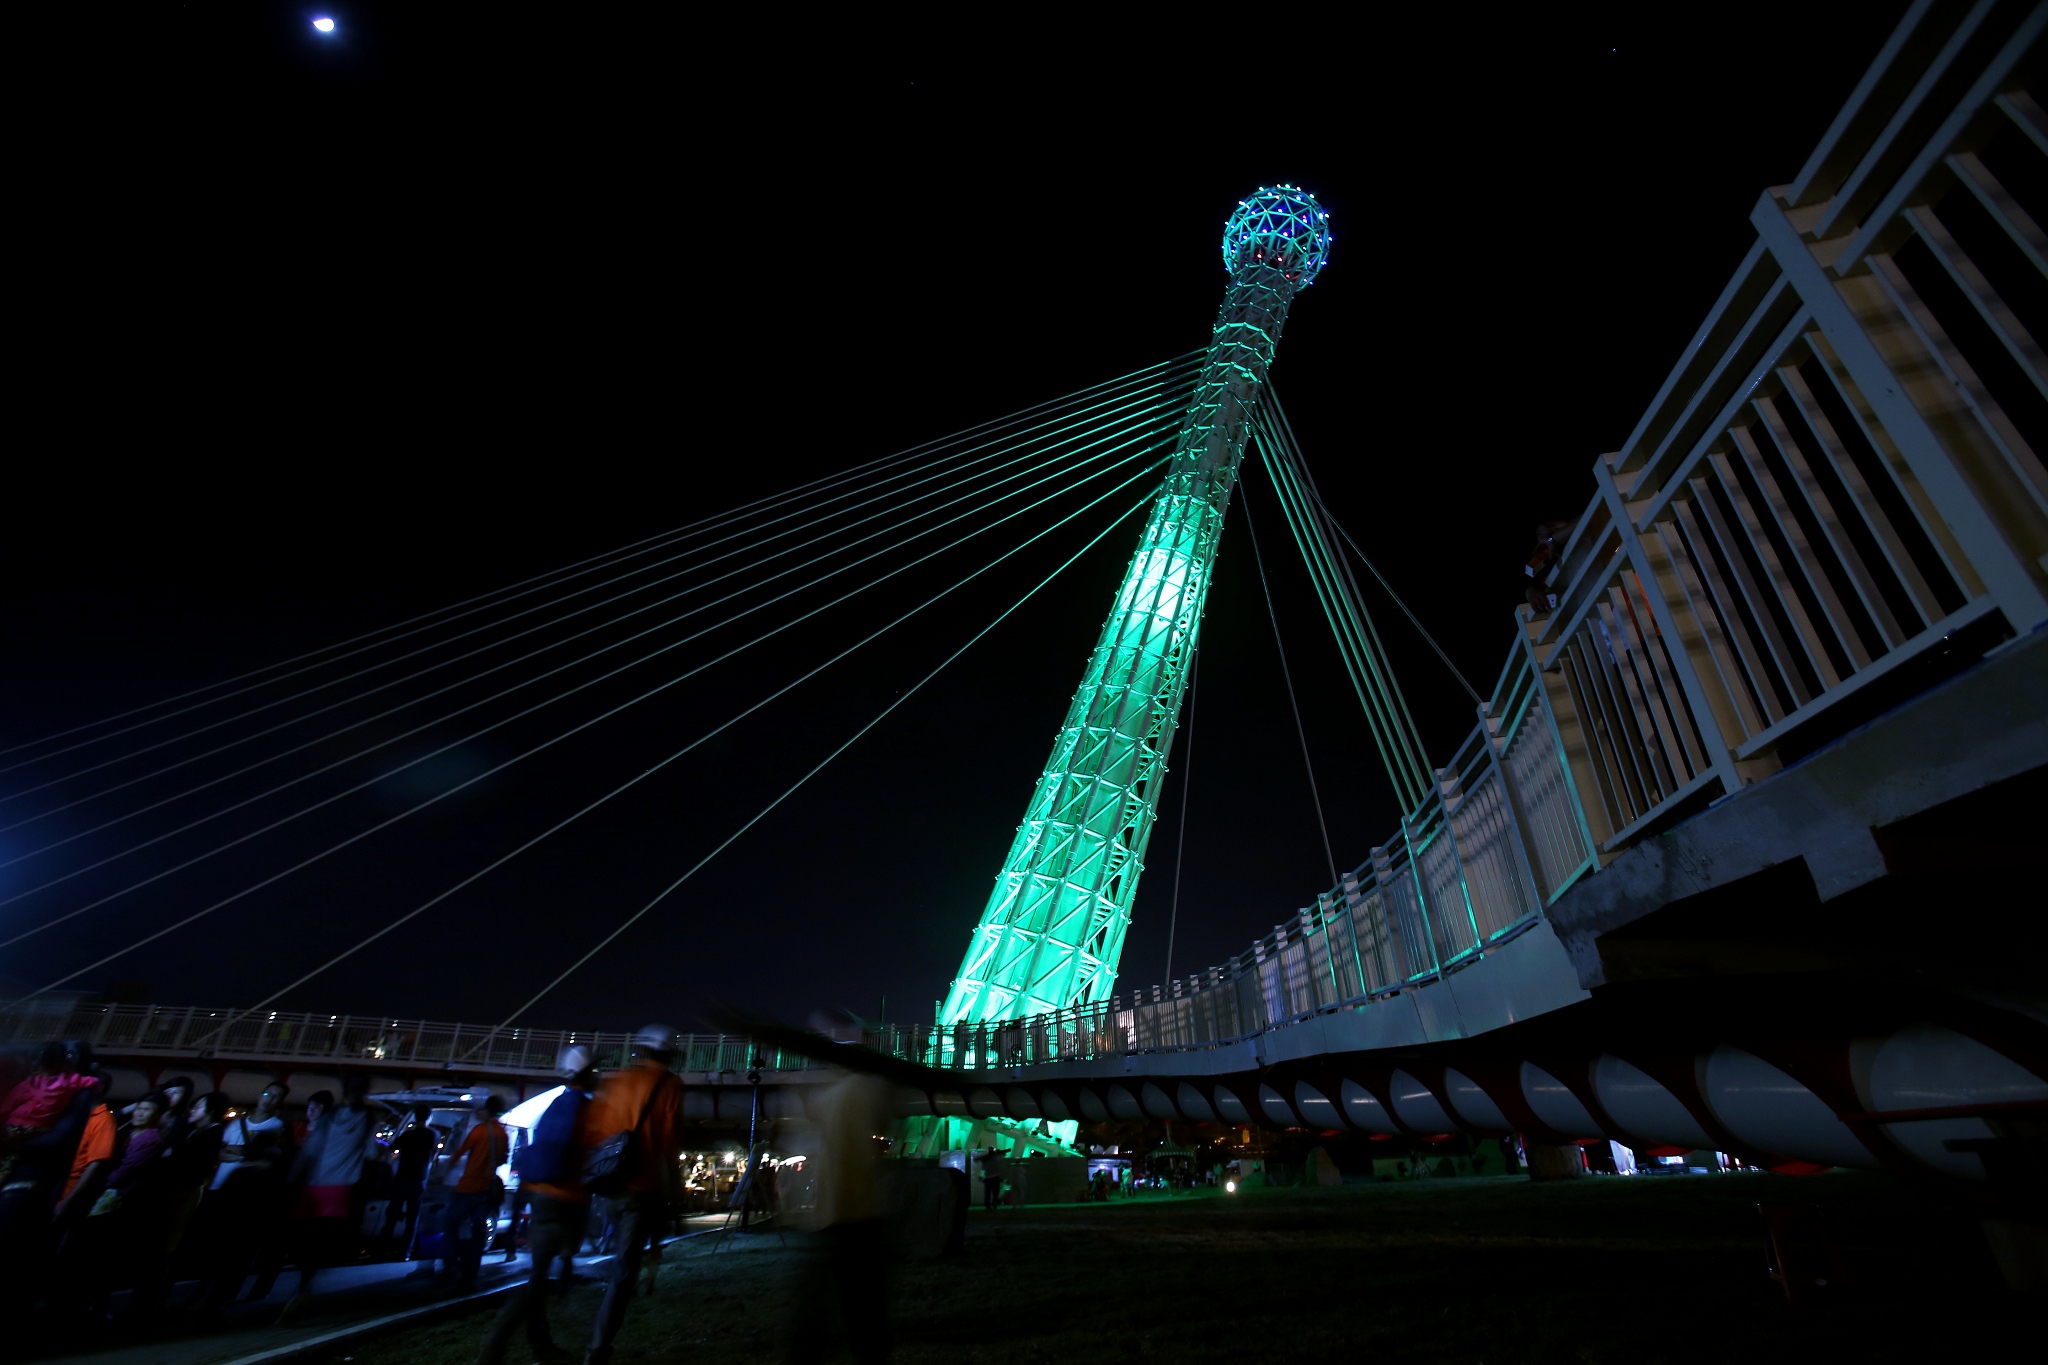 第一座跨基隆河景觀橋  汐止新地標「星光橋」啟用
